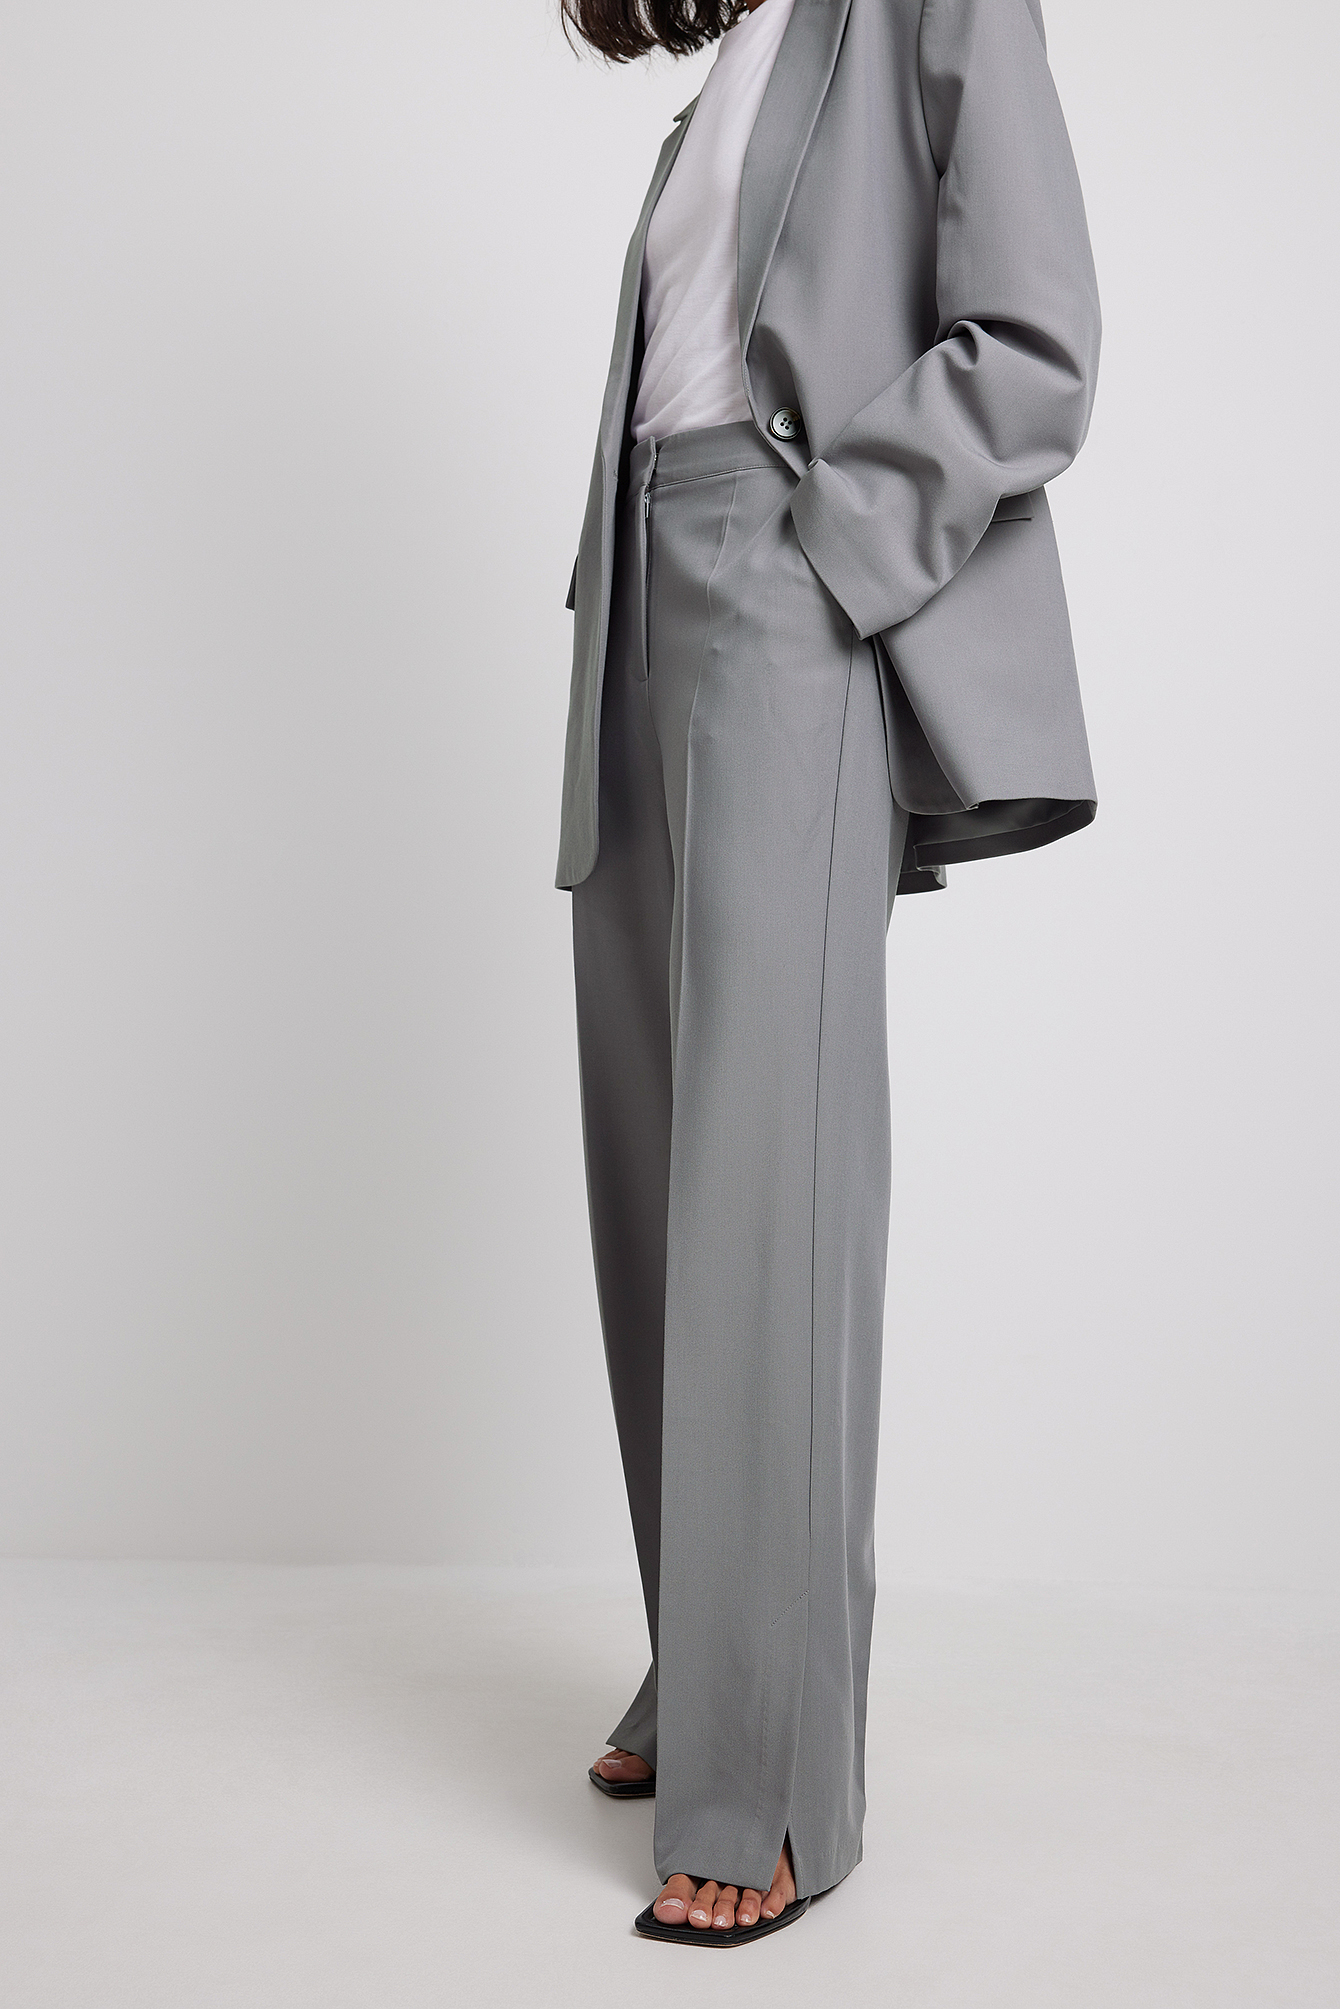 Grey Pantalon de costume habillé fendu sur les côtés